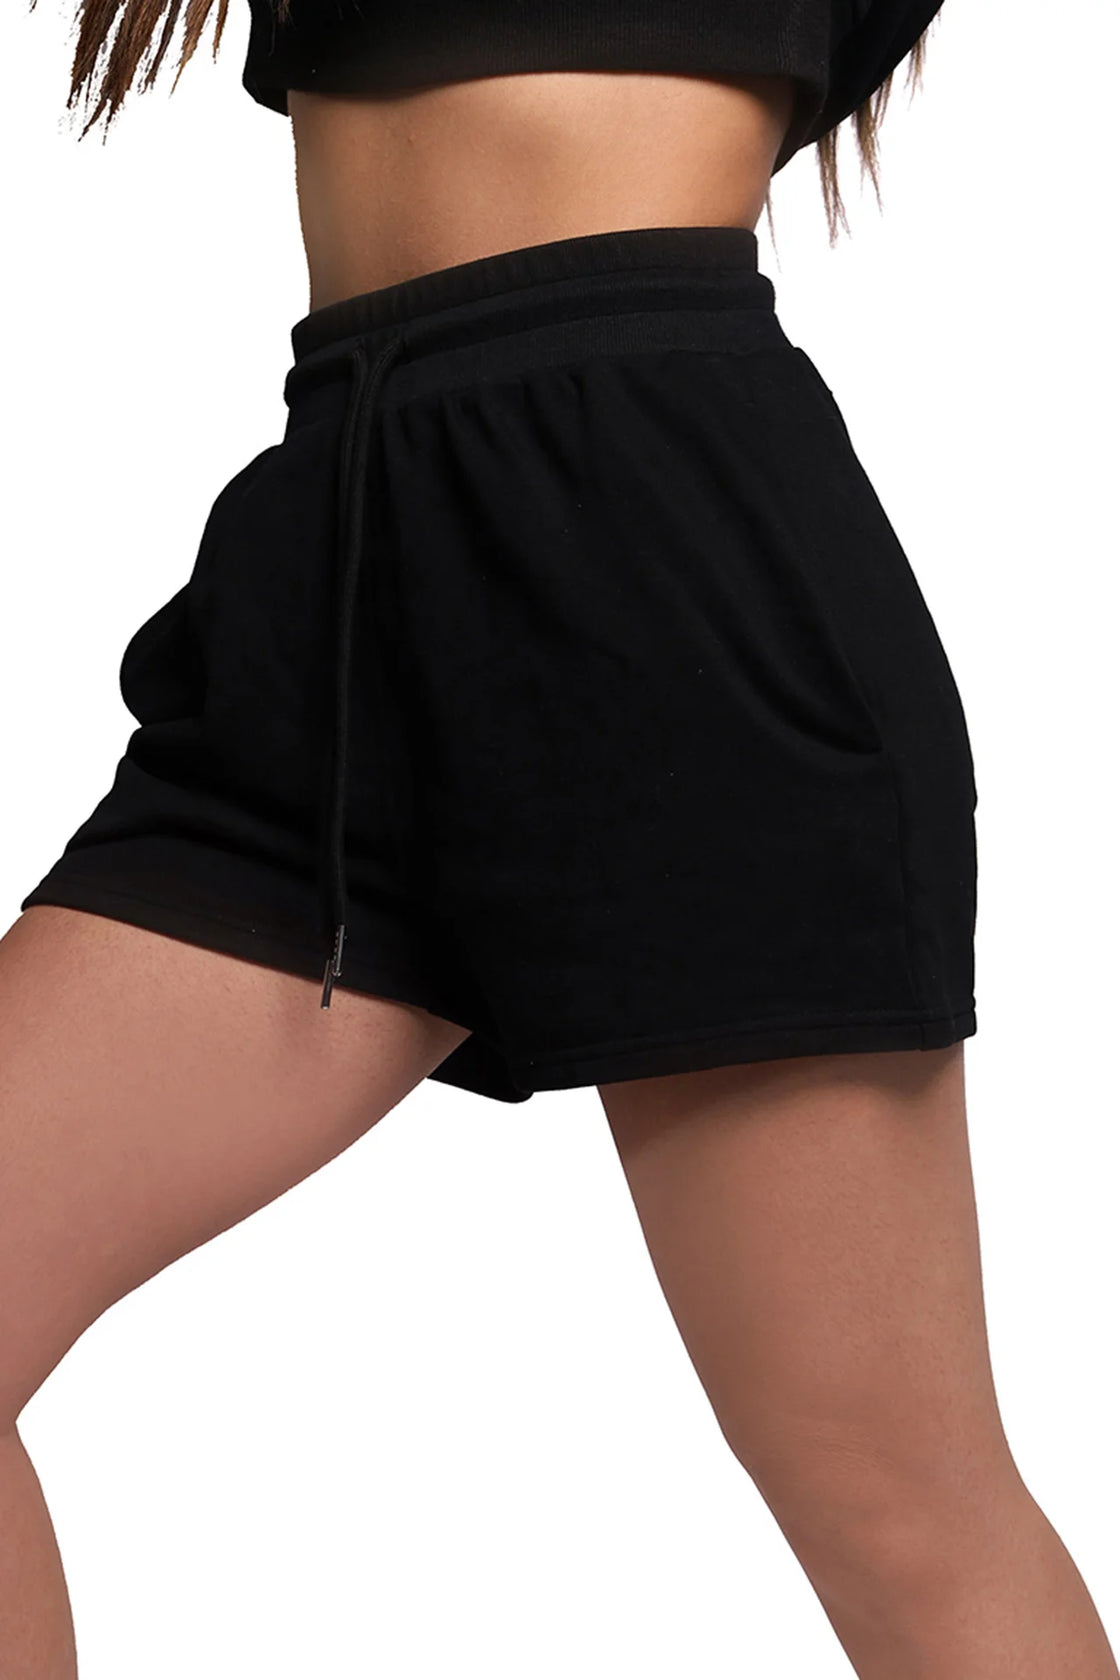 Black shorts for women